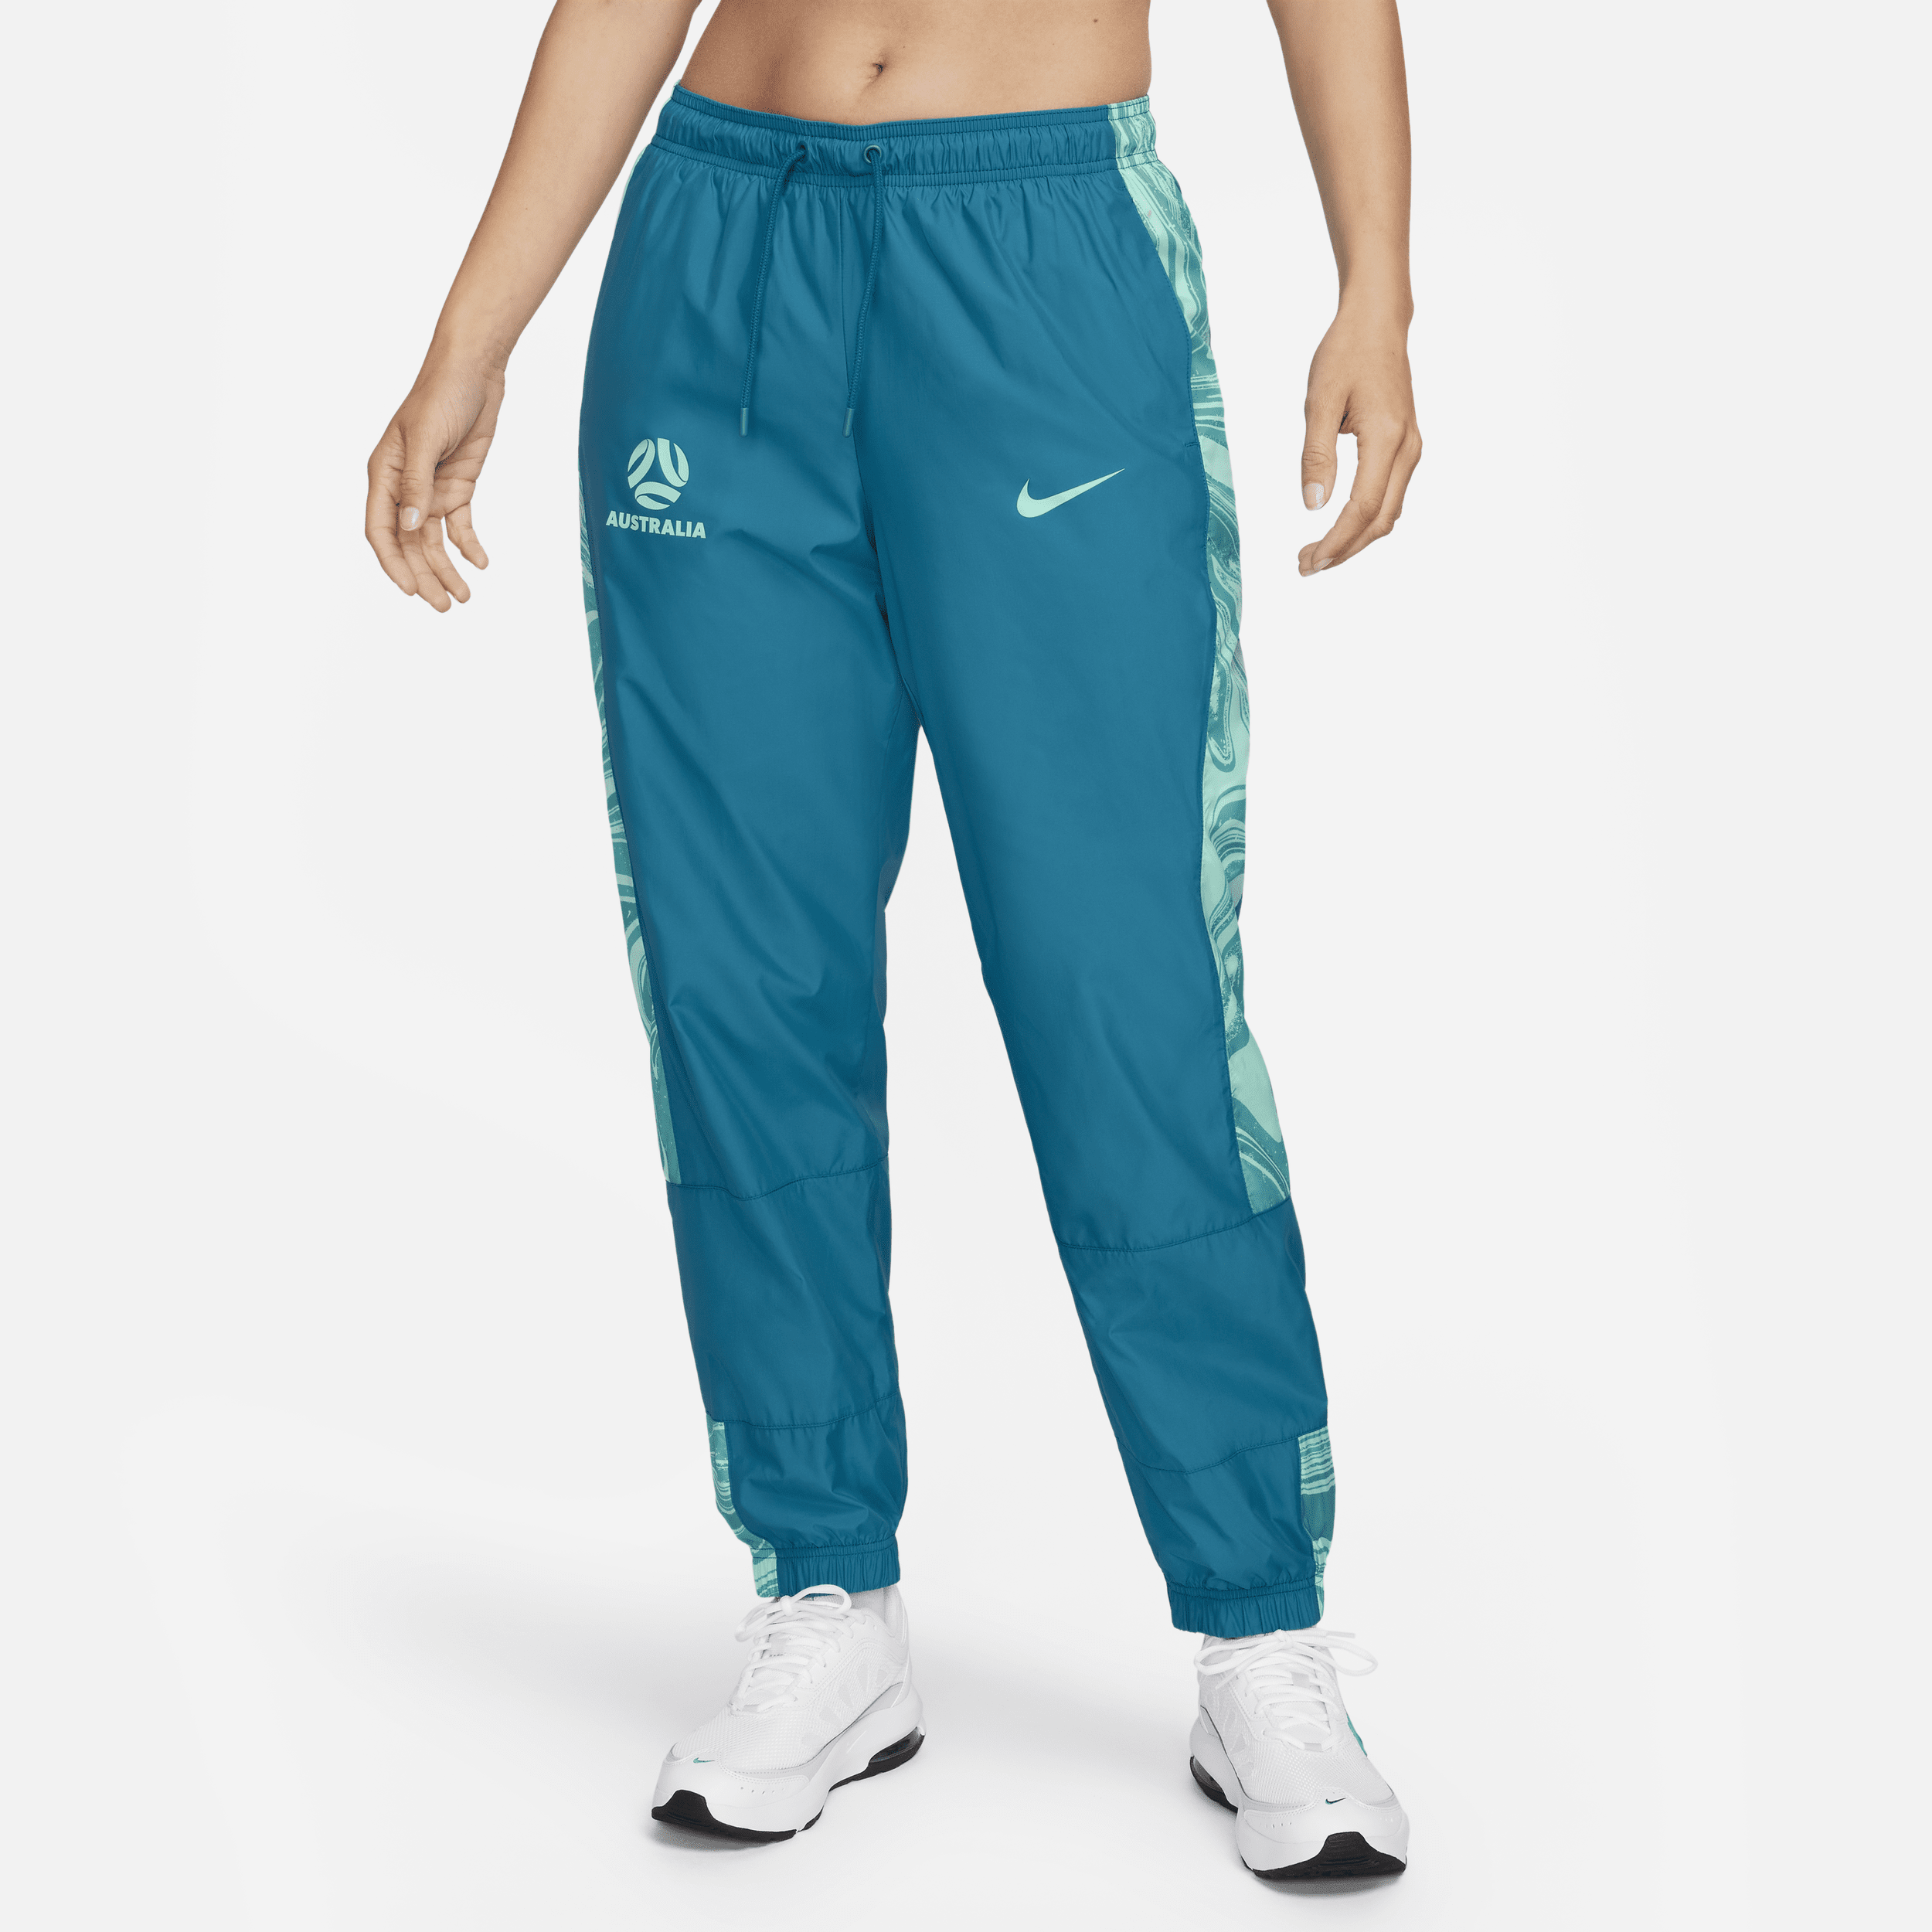 Australia Repel Essential Nike joggingbroek met halfhoge taille en graphic voor dames - Blauw